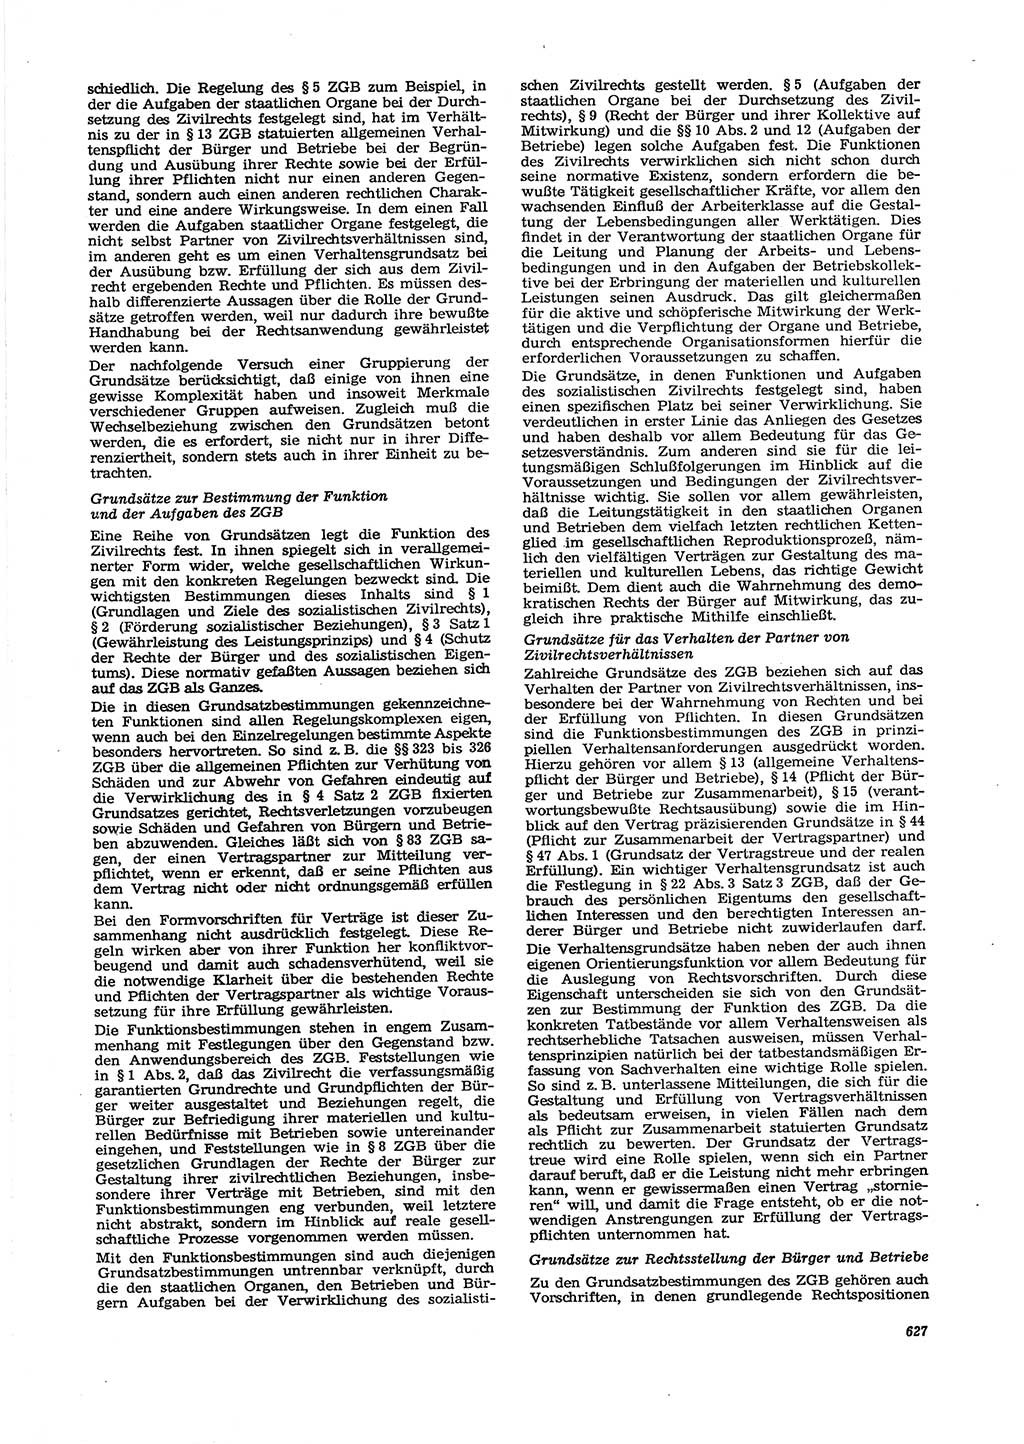 Neue Justiz (NJ), Zeitschrift für Recht und Rechtswissenschaft [Deutsche Demokratische Republik (DDR)], 29. Jahrgang 1975, Seite 627 (NJ DDR 1975, S. 627)